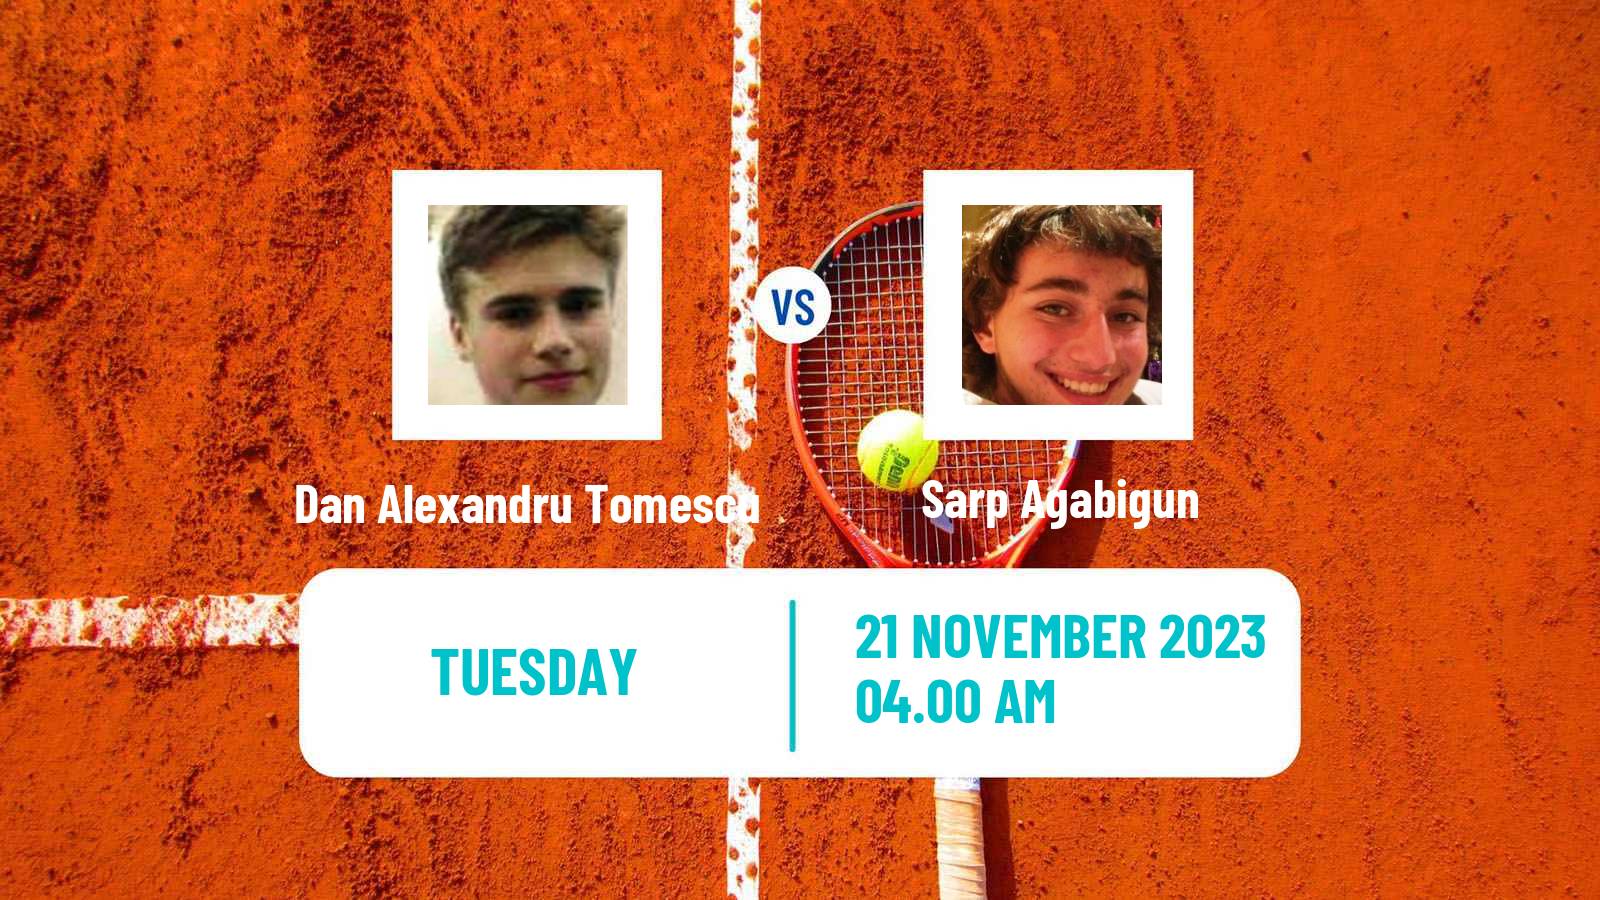 Tennis ITF M25 Antalya 3 Men Dan Alexandru Tomescu - Sarp Agabigun